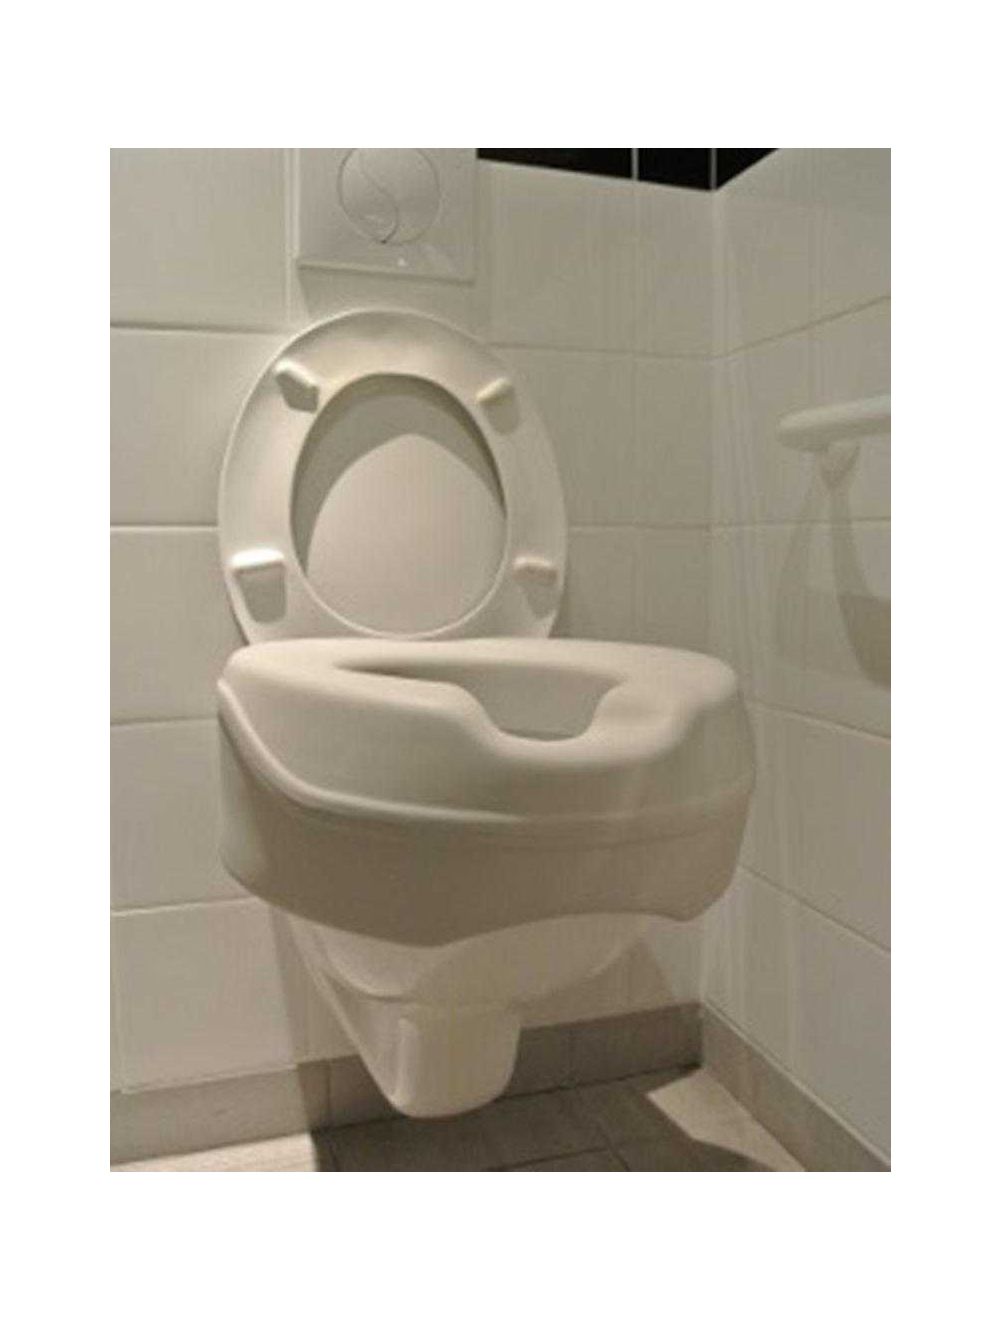 Rehausseur WC Adulte avec Abattant WC - 10 Cm de Hauteur - Siege To